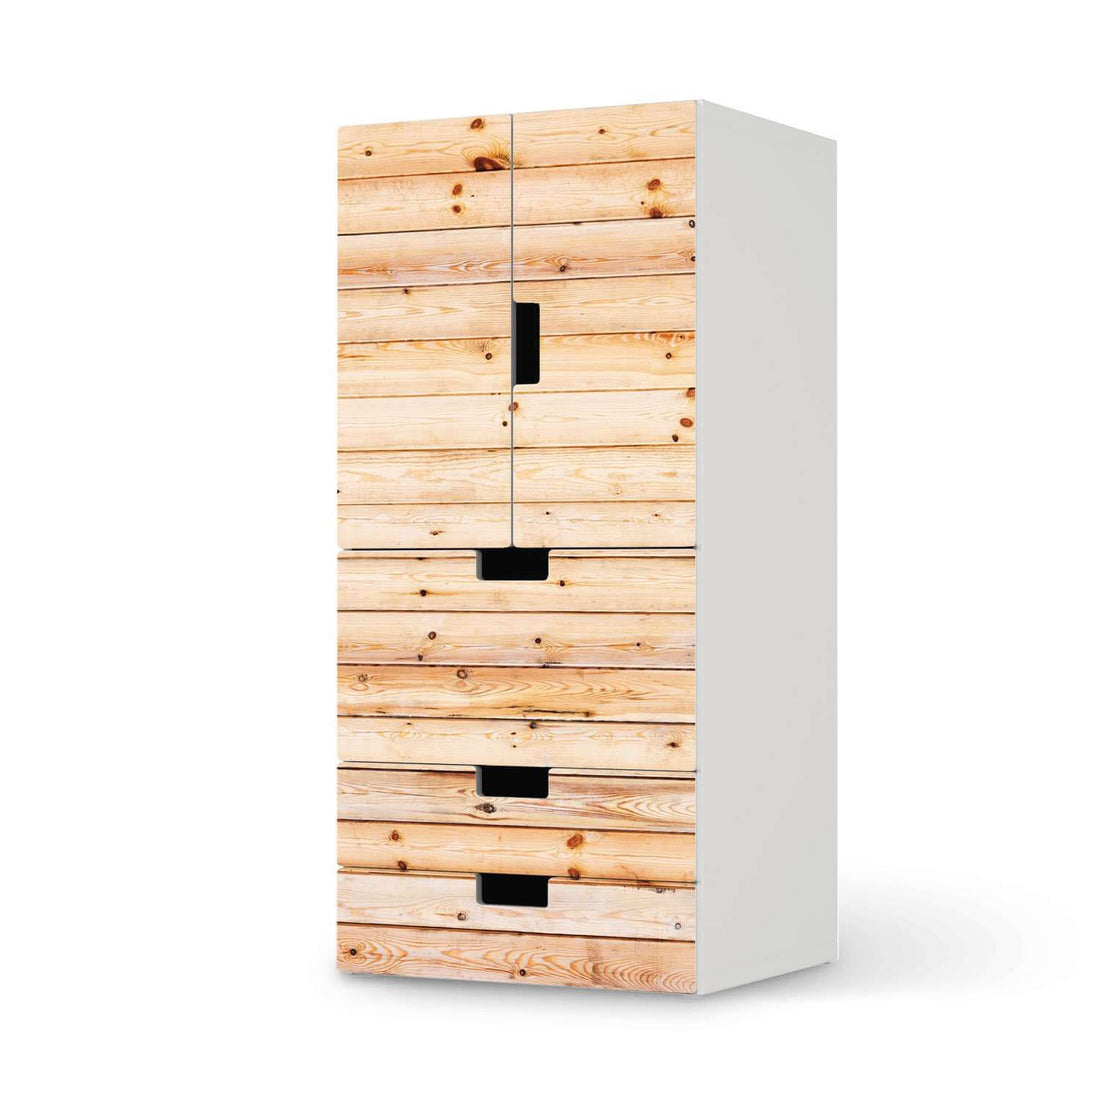 Möbelfolie Bright Planks - IKEA Stuva kombiniert - 3 Schubladen und 2 kleine Türen  - weiss